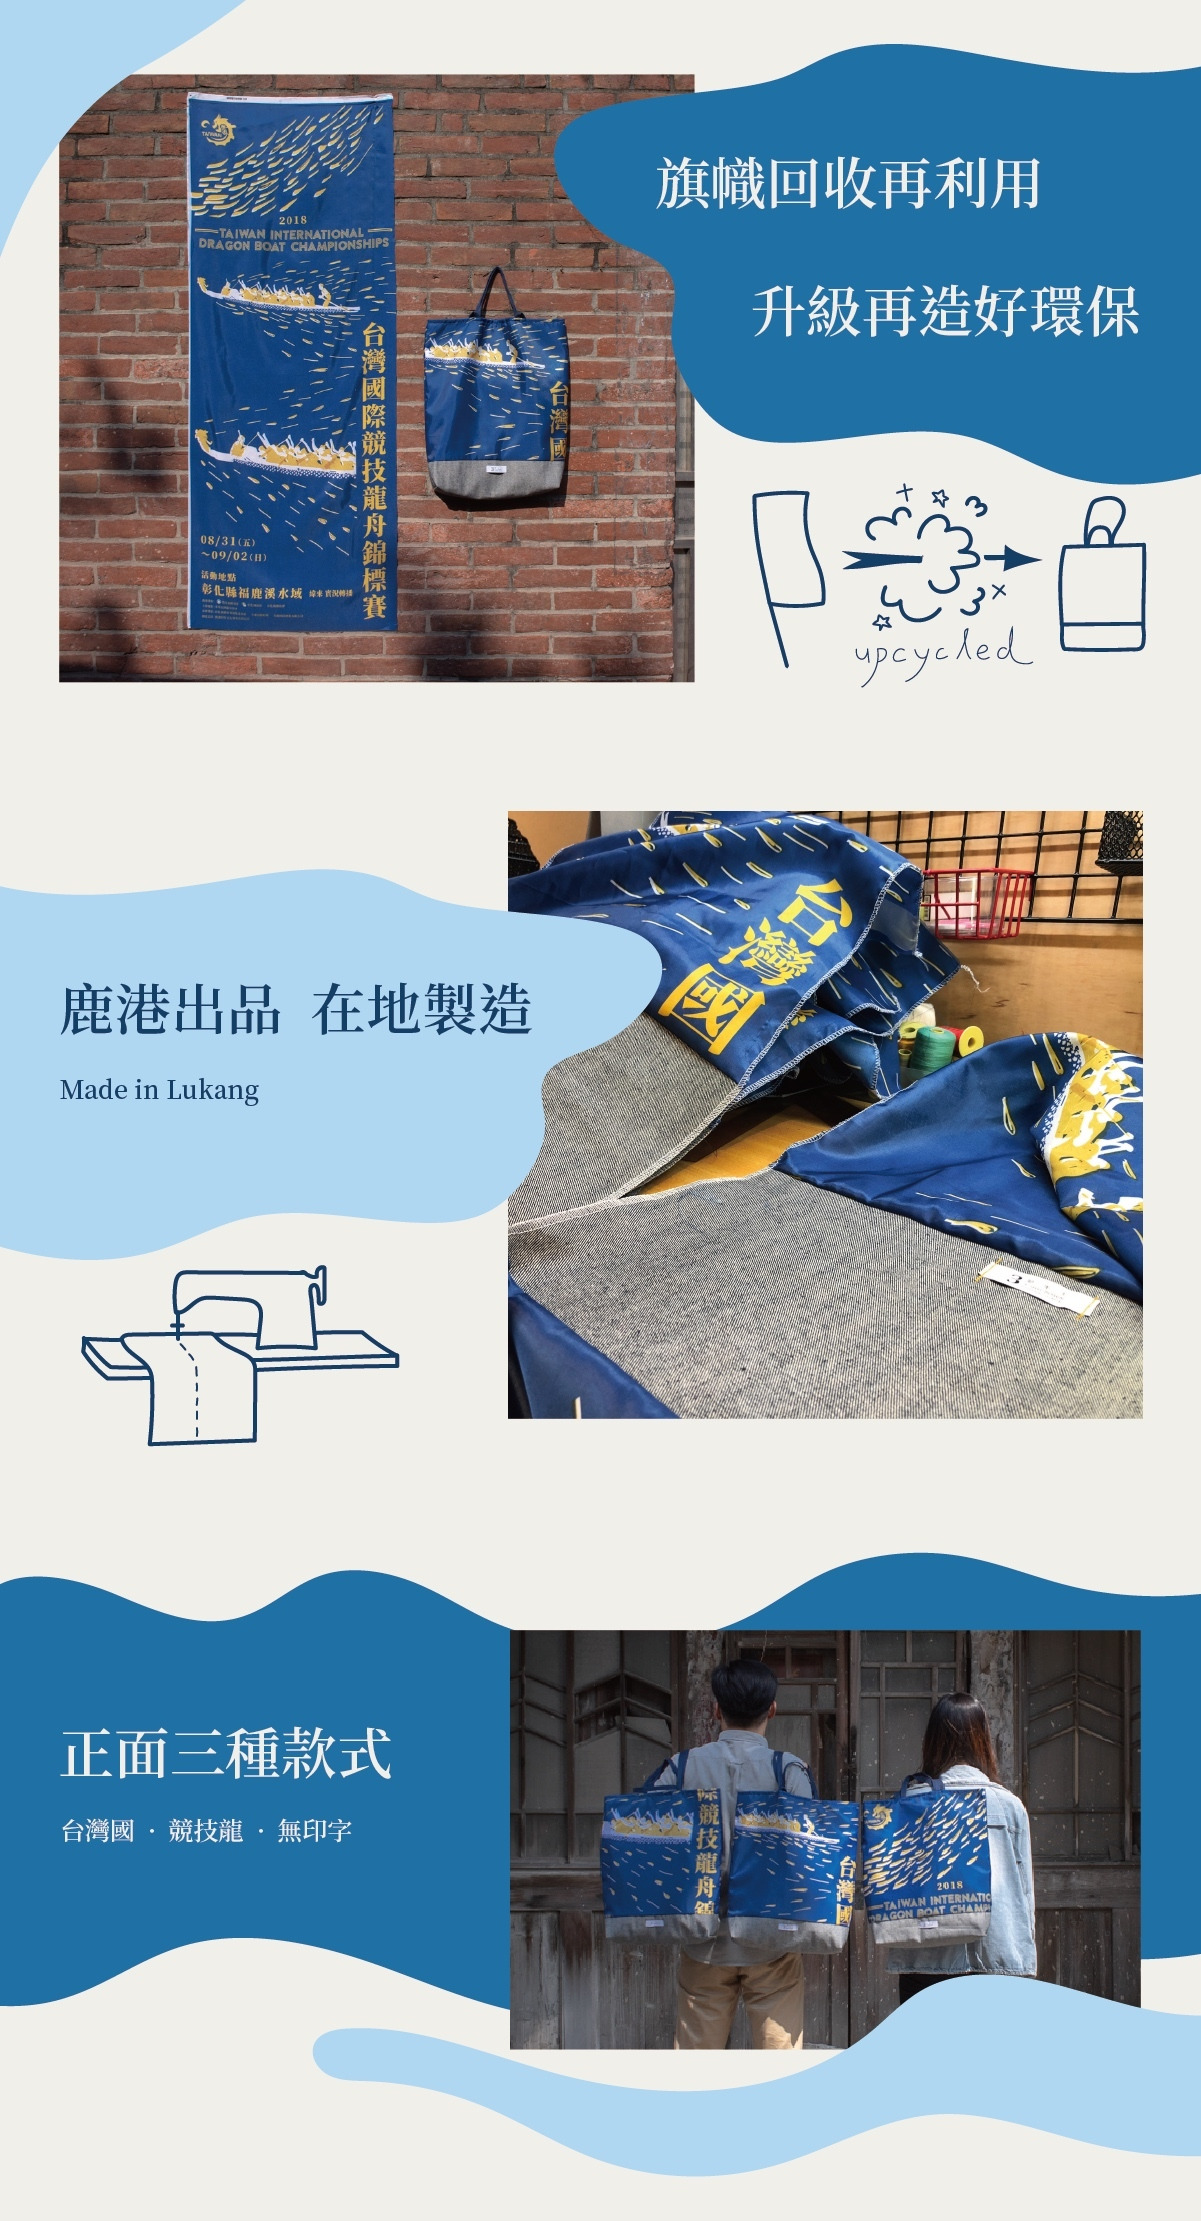 台灣國旗幟回收再利用，製作成手提袋，鹿港出品在地製造，並有三種款式：台灣國、競技龍、無印字